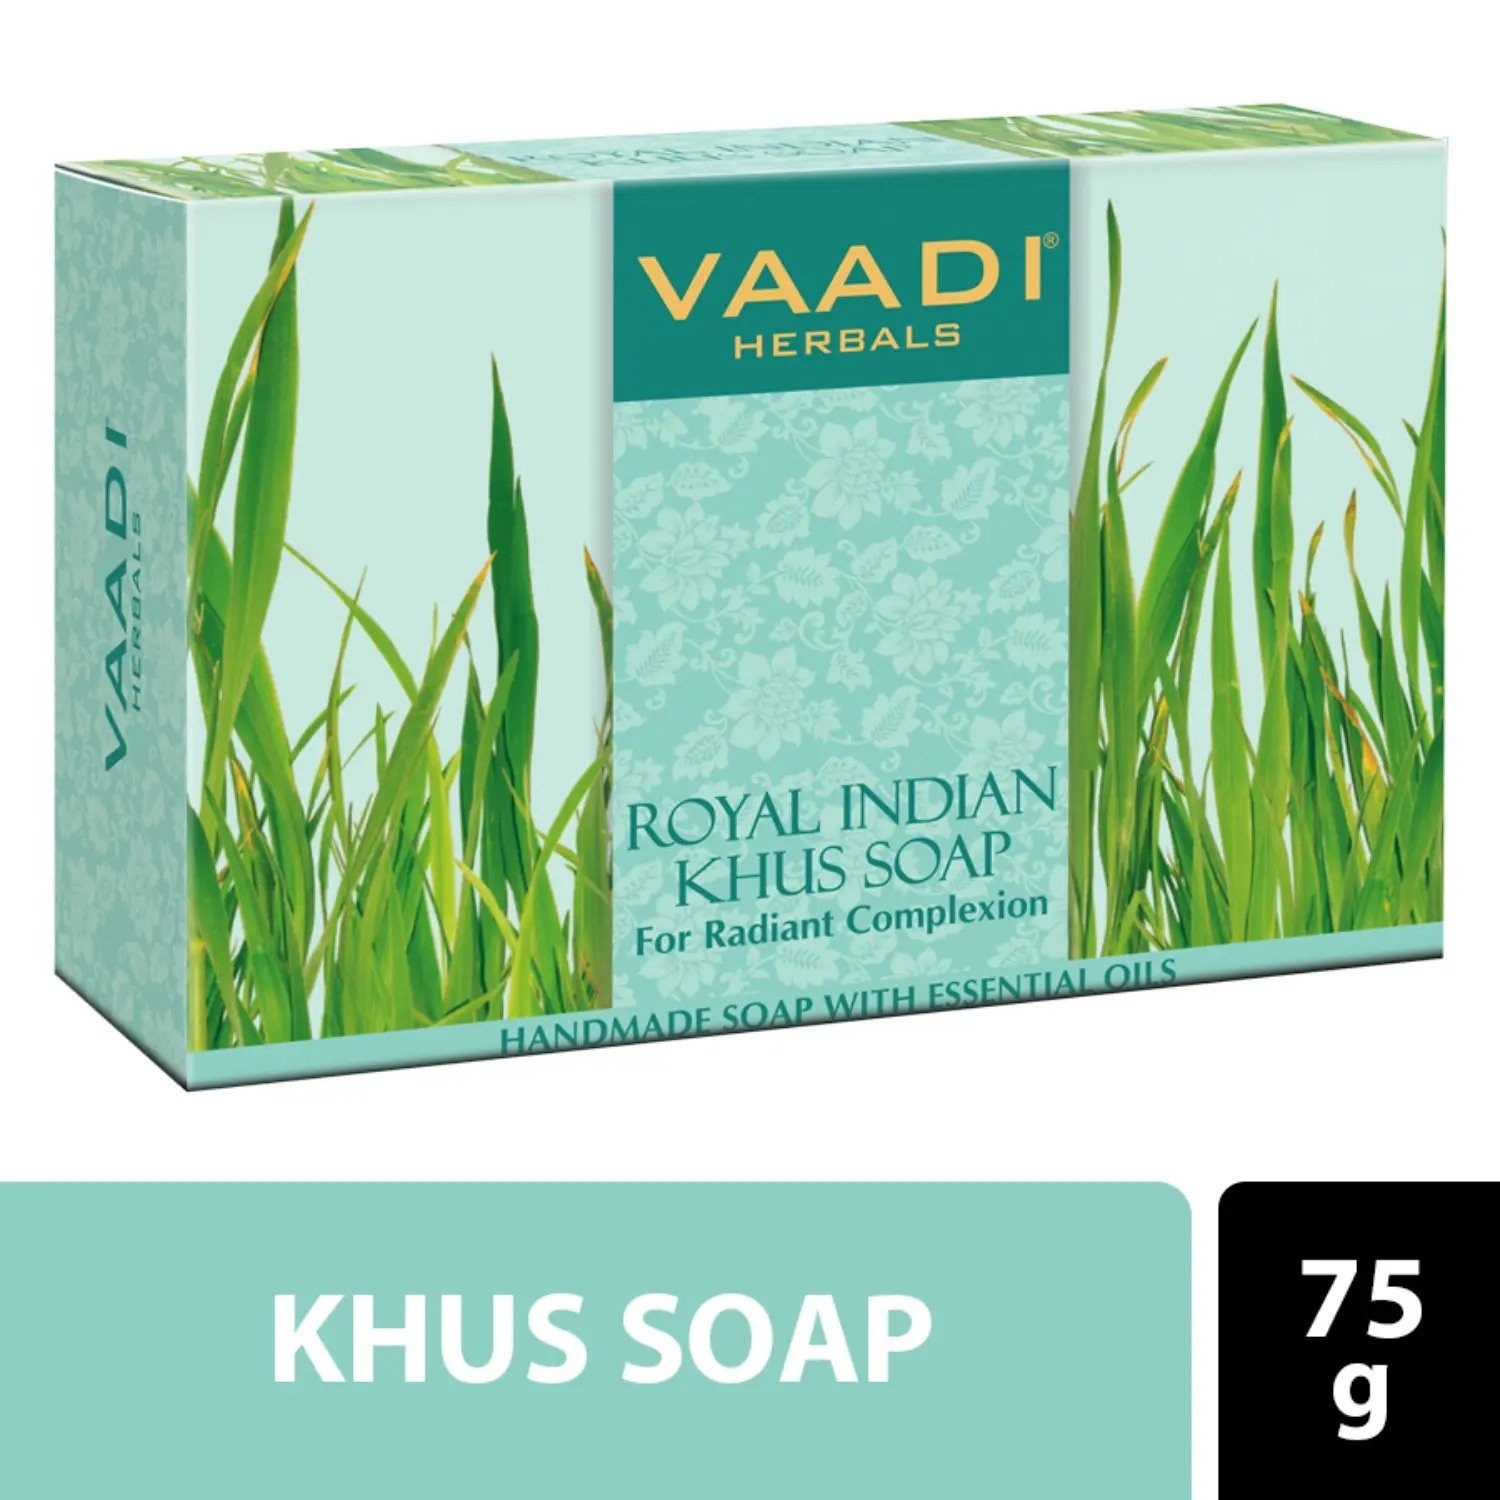 Vaadi Herbals Royal Indian Khus Soap (75g)